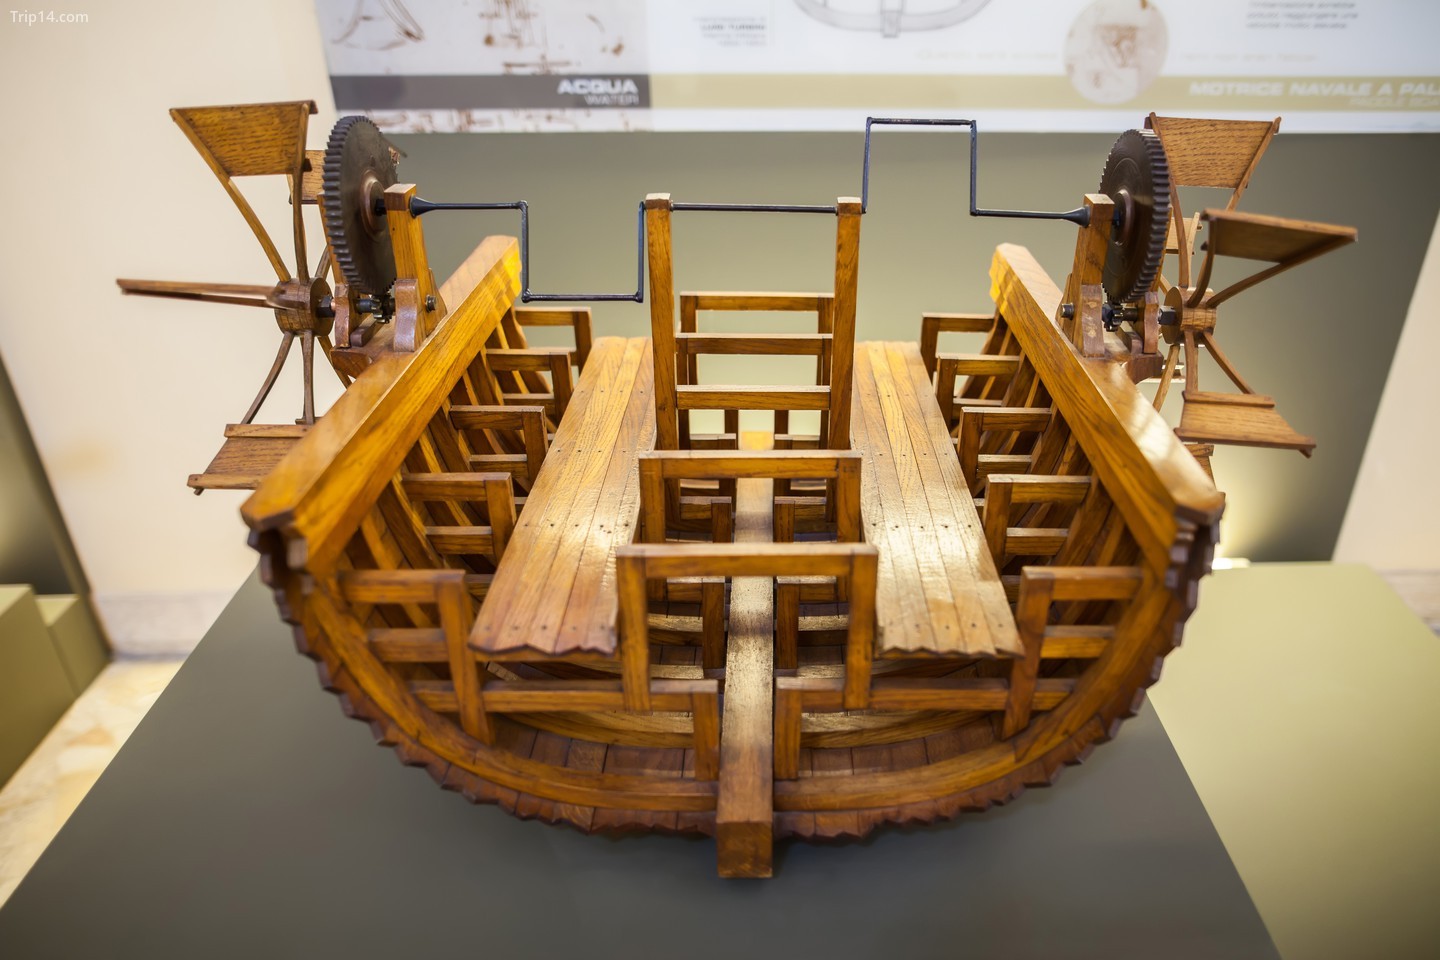 Thuyền có mái chèo của Leonardo sử dụng hai bàn đạp để cung cấp năng lượng cho cơ cấu chuyển số